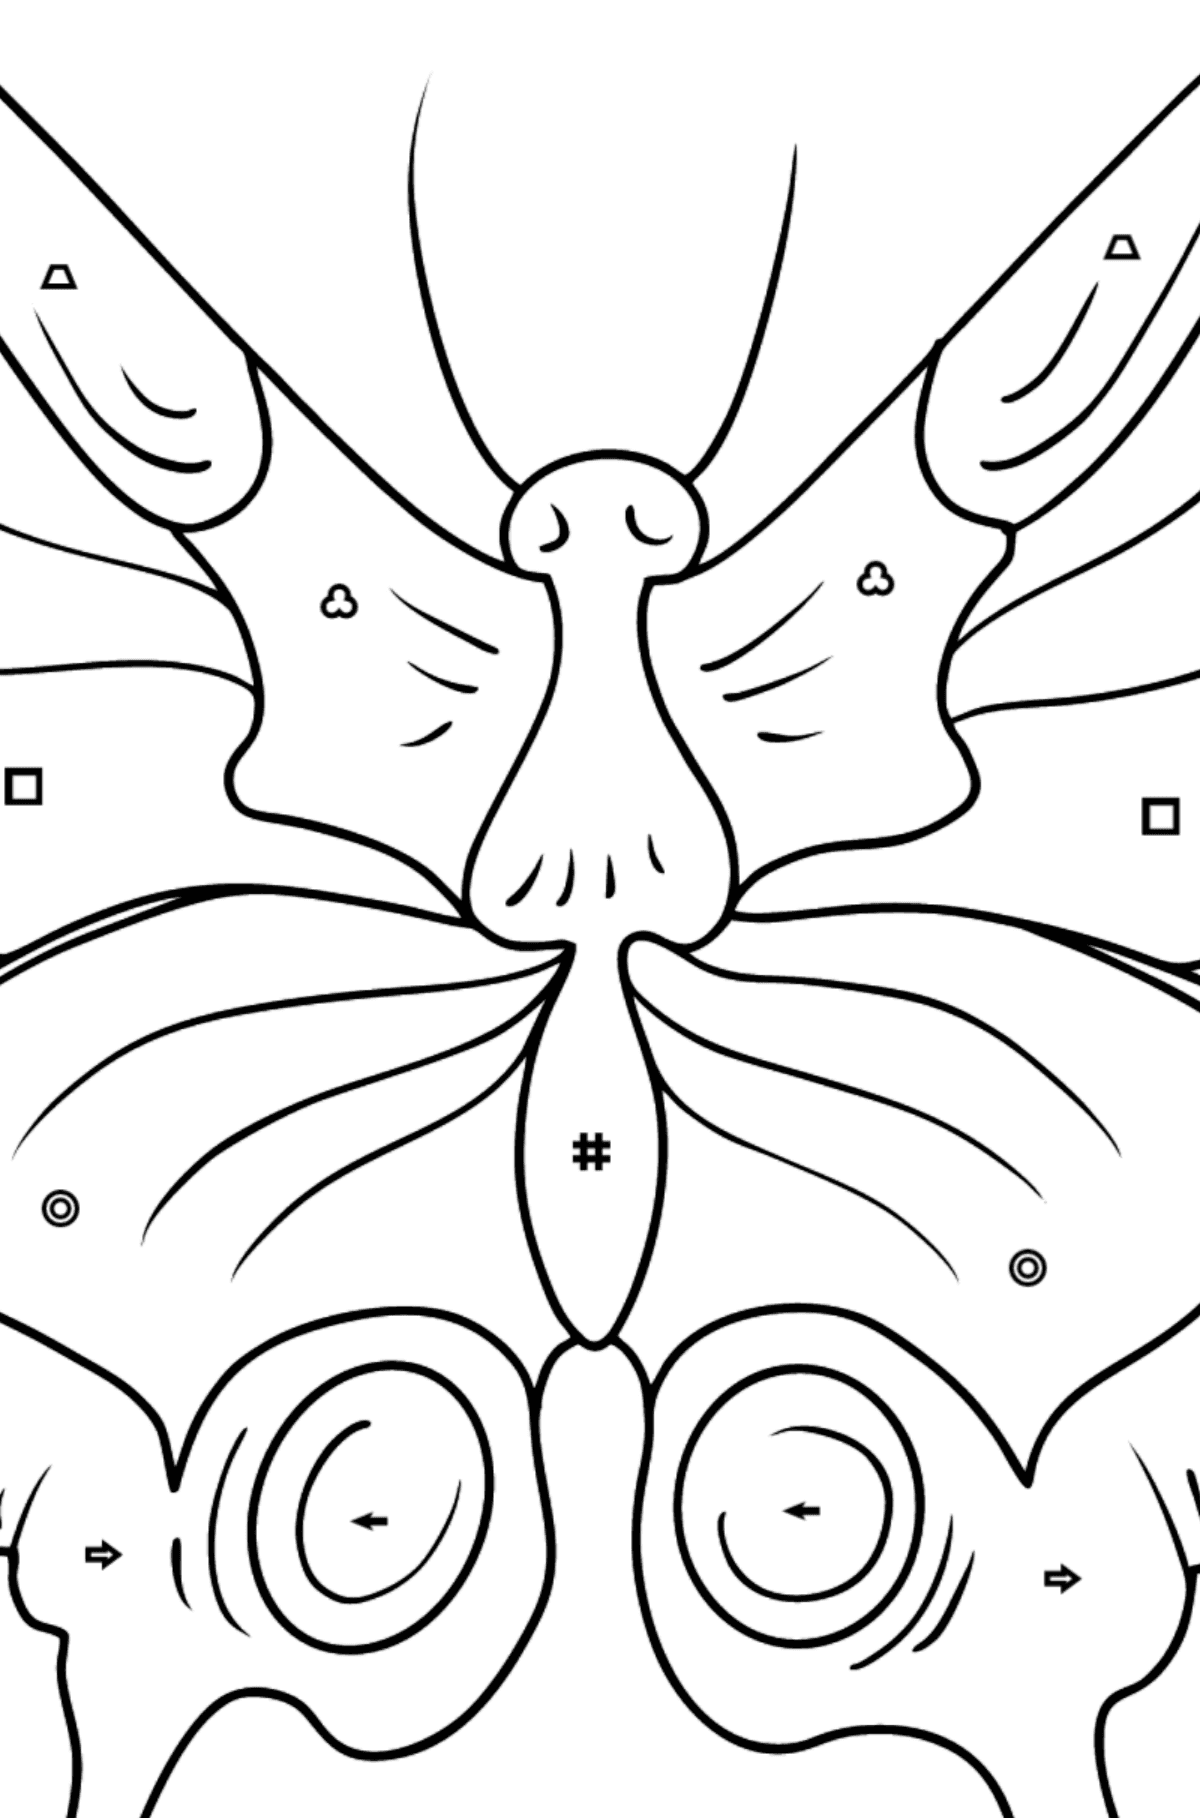 Omalovánka motýl otakárek - Omalovánka podle Symbolů a Geometrickým Tvarům pro děti